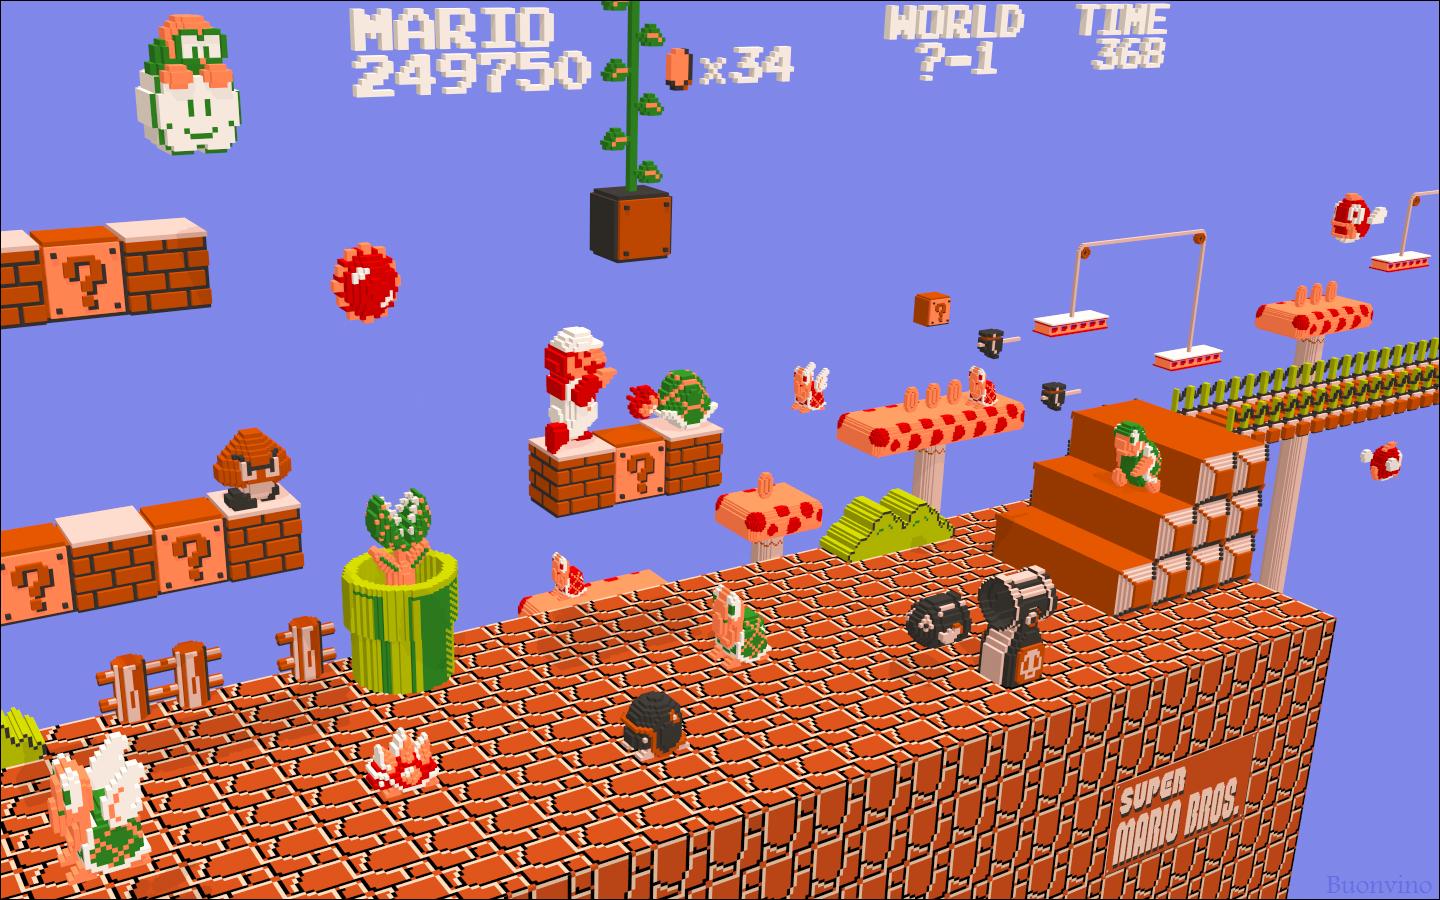 Super Mario In 3d Wallpaper | 1440x900 | ID:15299